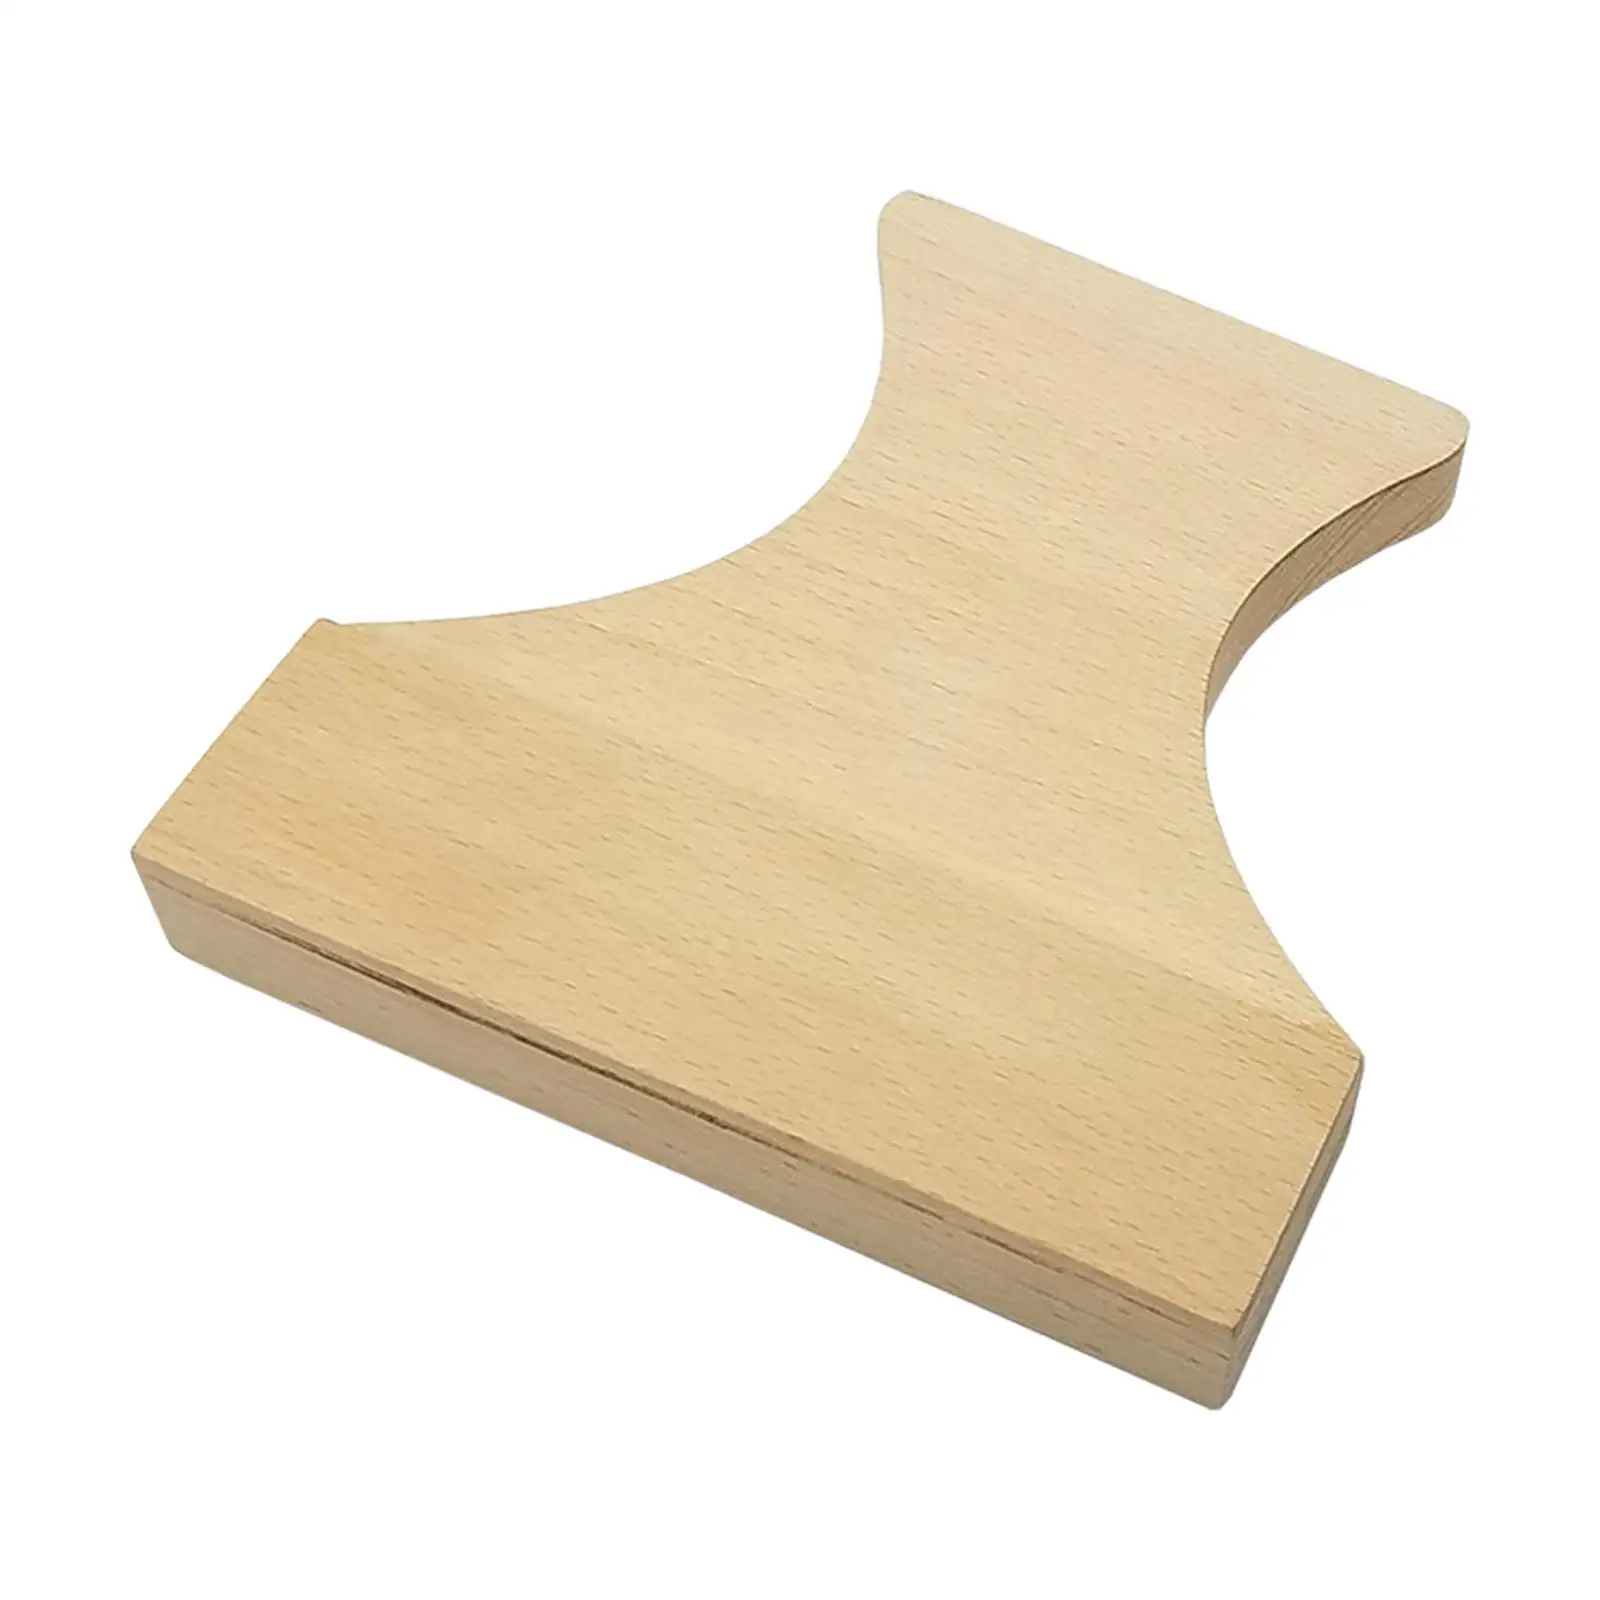 

Инструмент для напольного покрытия, портативный разборный ламинатный настил, легко использовать для установки плавающего пола, из твердой древесины, профессиональный «сделай сам»